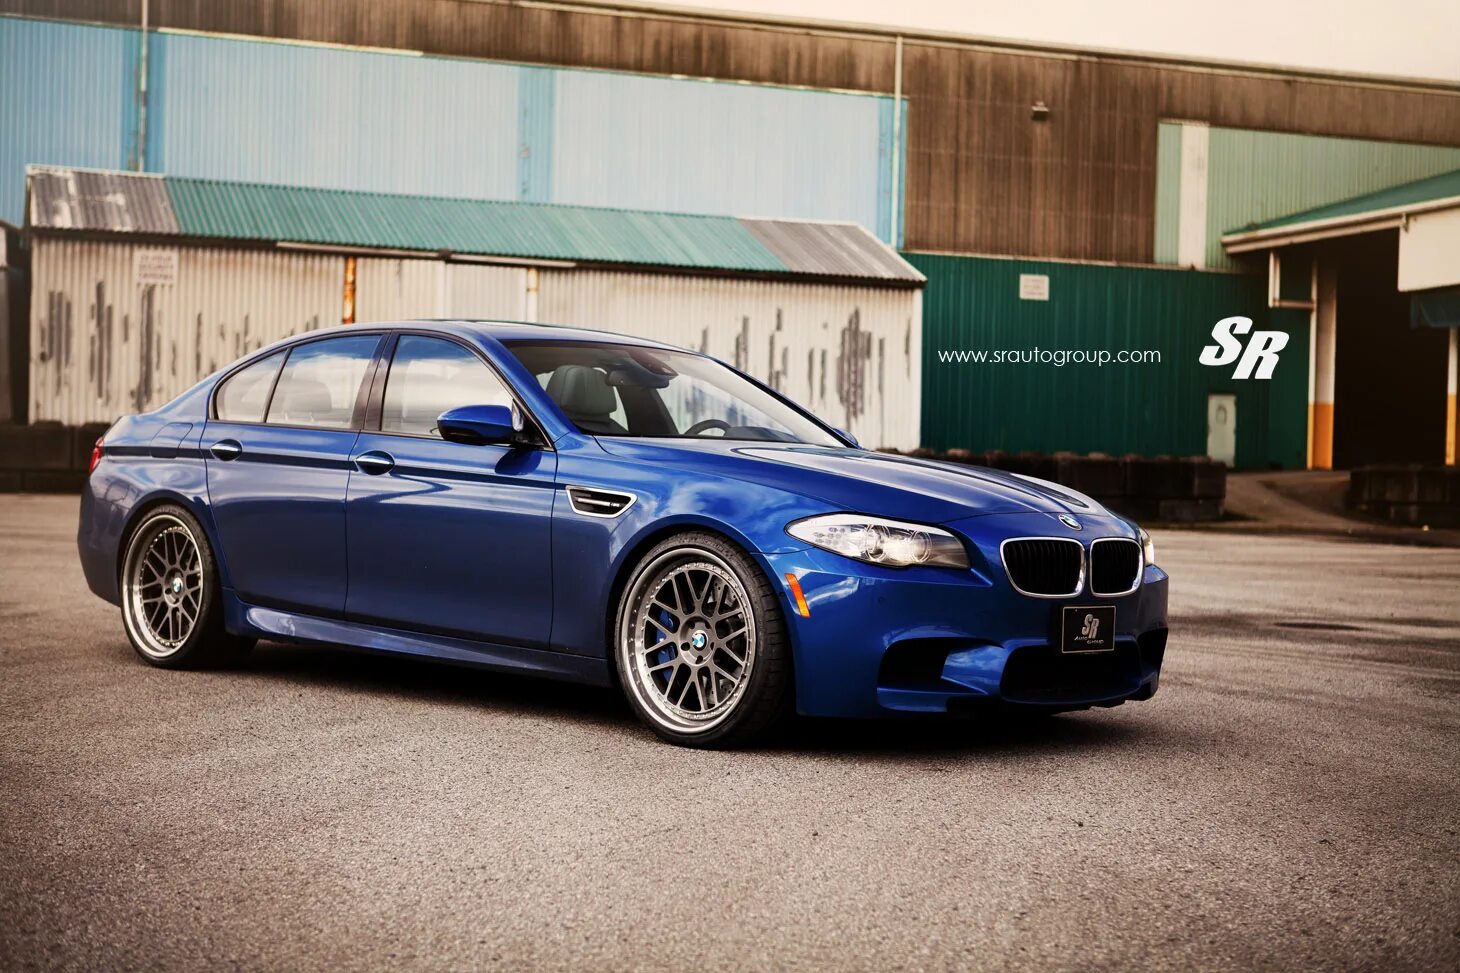 Bmw m 10. BMW m5 f10. BMW 5 f10. BMW m3 f10. BMW m5 f10 Blue.